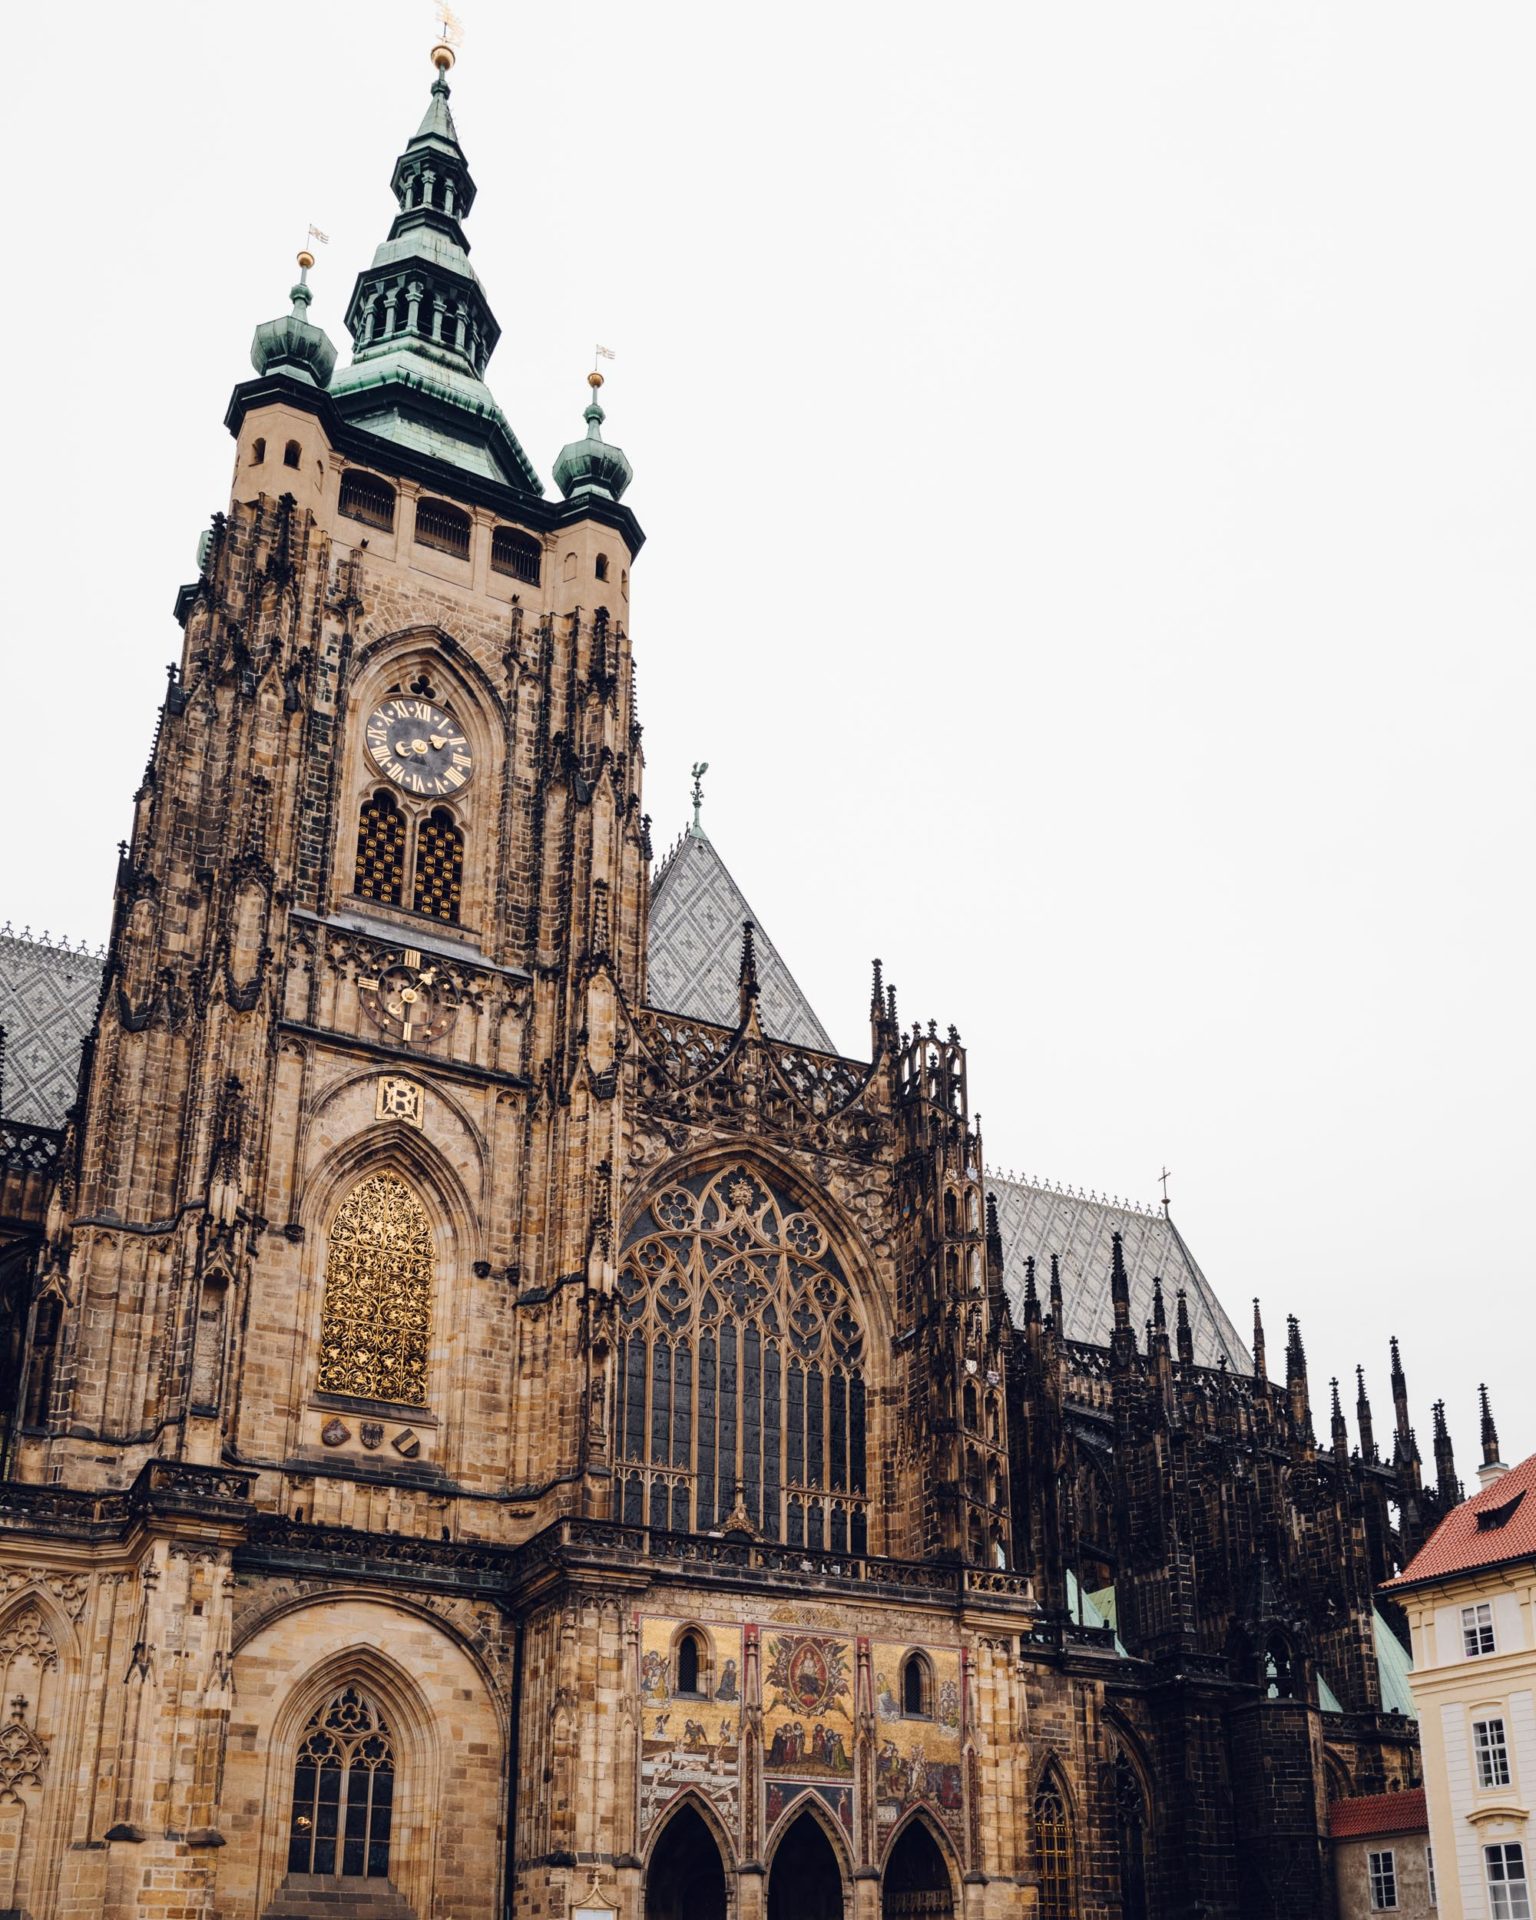 Prague castle gothic architecture via Find Us Lost